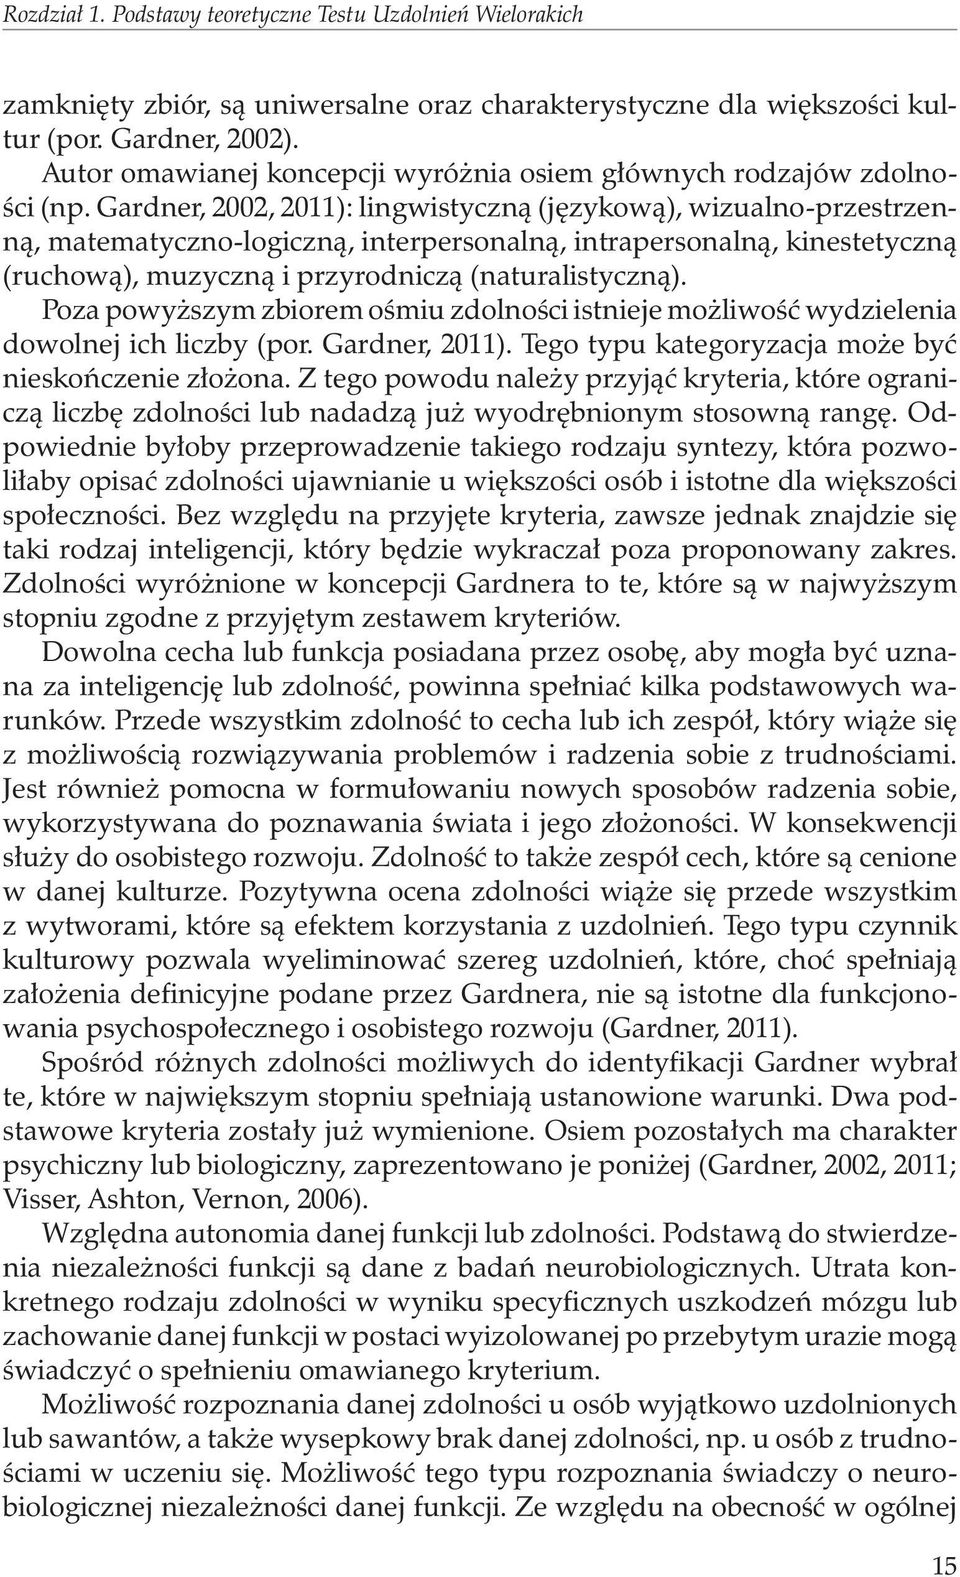 Gardner, 2002, 2011): lingwistyczną (językową), wizualno-przestrzenną, matematyczno-logiczną, interpersonalną, intrapersonalną, kinestetyczną (ruchową), muzyczną i przyrodniczą (naturalistyczną).